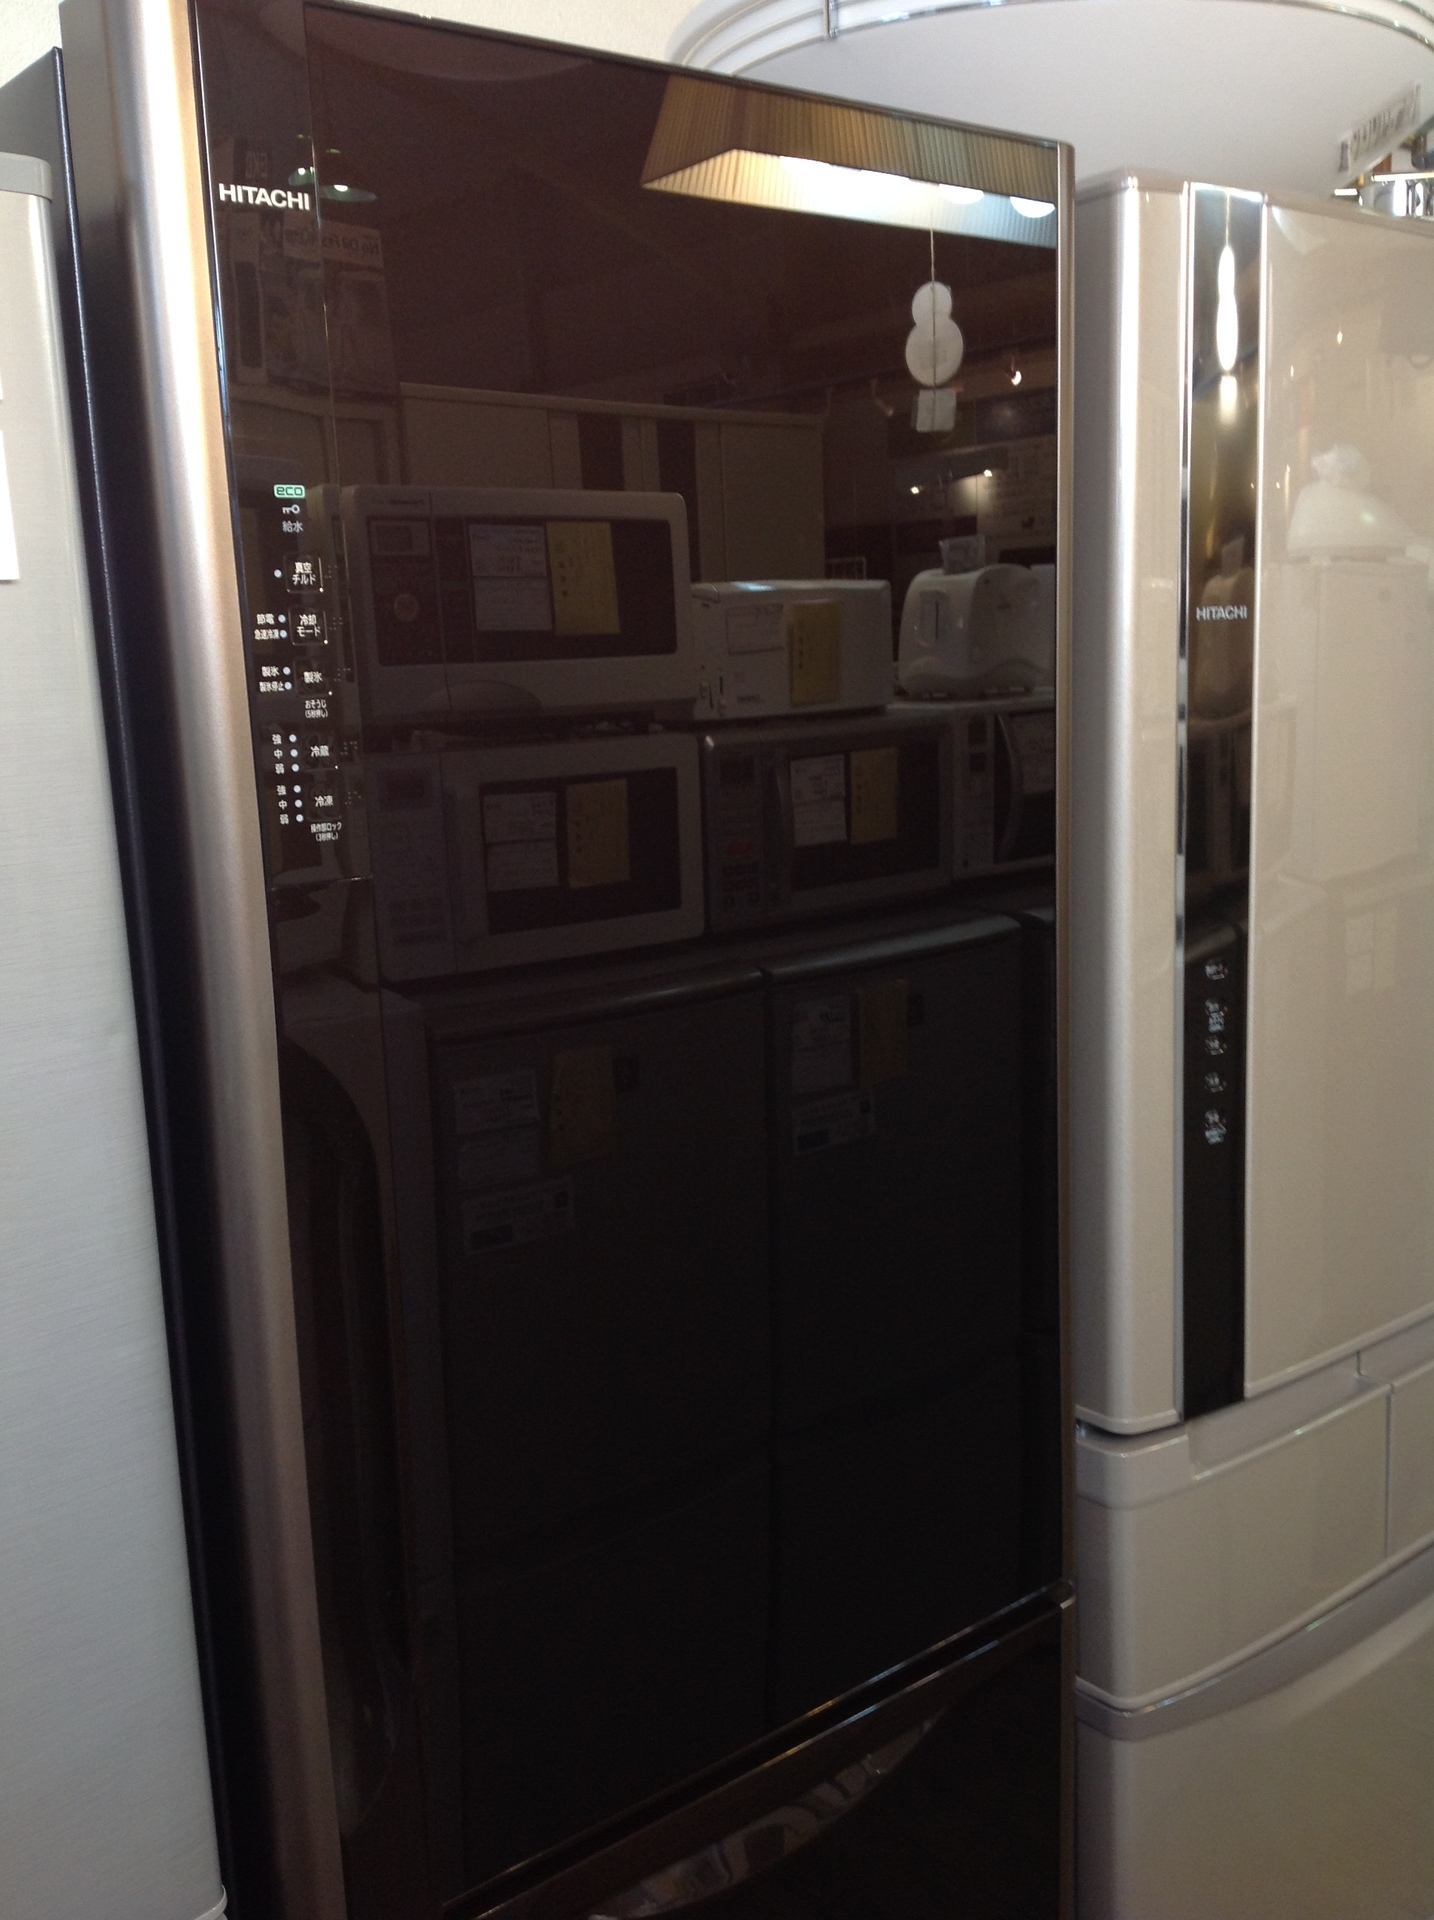 HITACHI 日立 真空チルド 冷蔵庫 R-S3700FV入荷しました。: 買取 商品